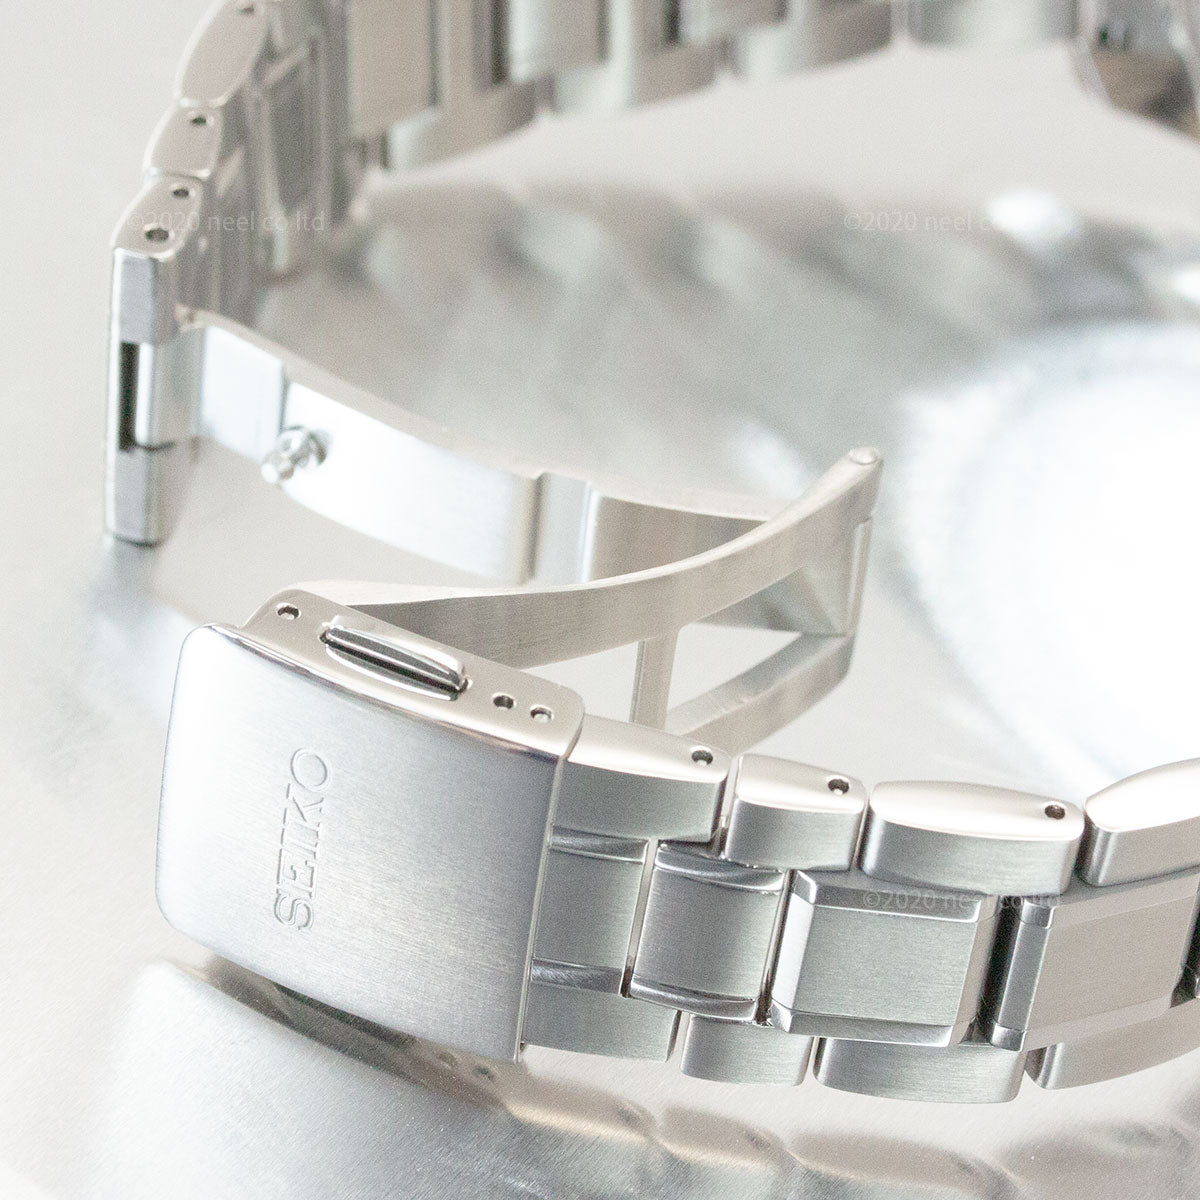 セイコー プレザージュ SEIKO PRESAGE 自動巻き メカニカル コアショップ専用モデル 腕時計 メンズ プレステージライン SARX077